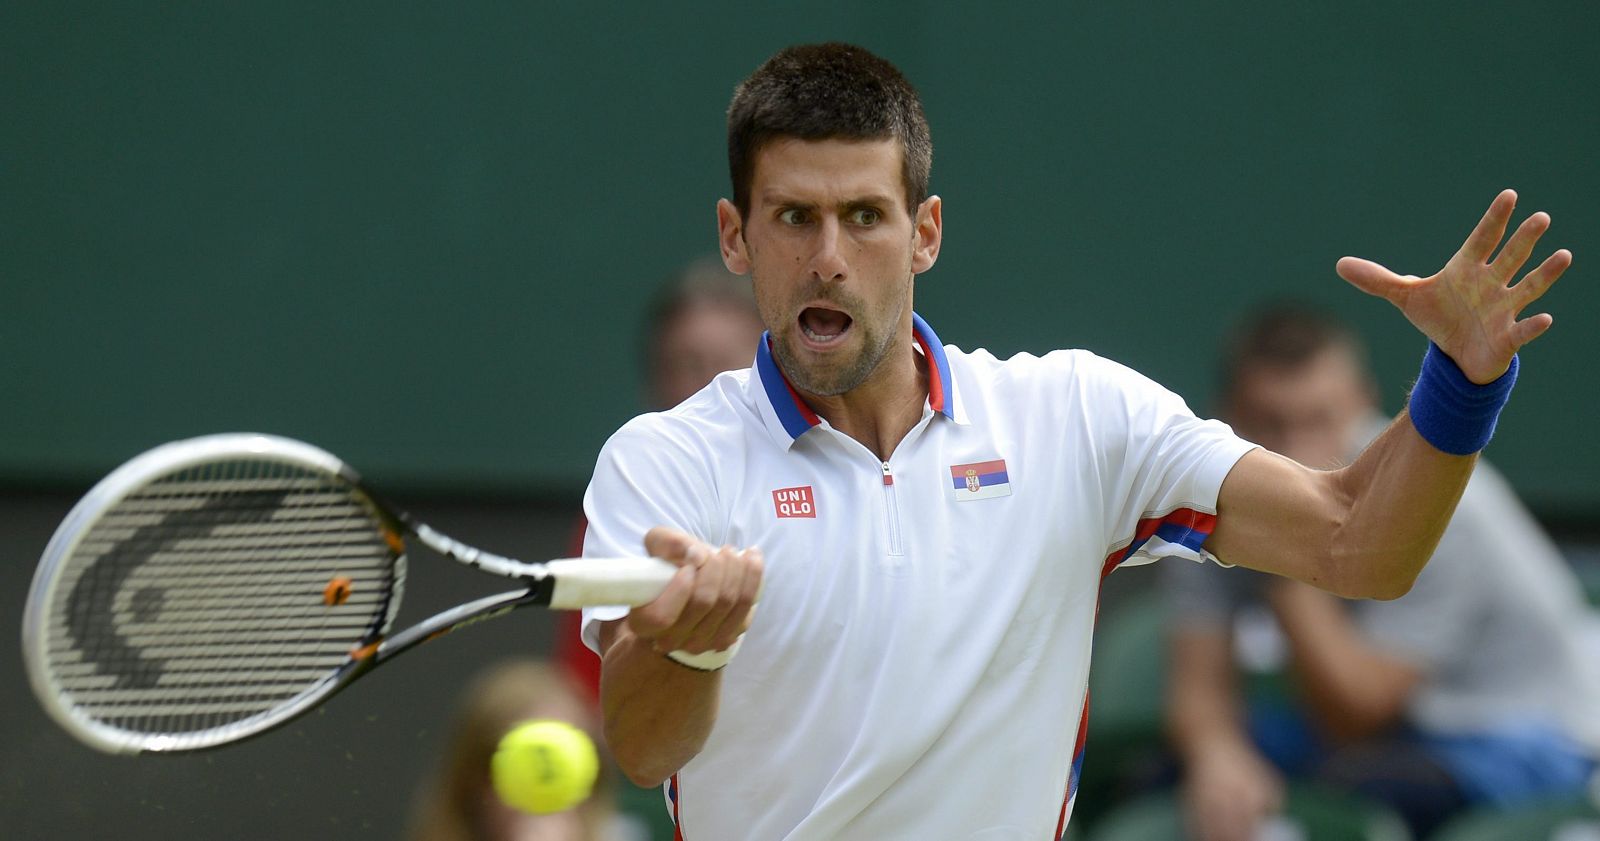 El tenista serbio Novak Djokovic devuelve la bola al australiano Lleyton Hewitt, durante los Juegos Olímpicos de Londres 2012.